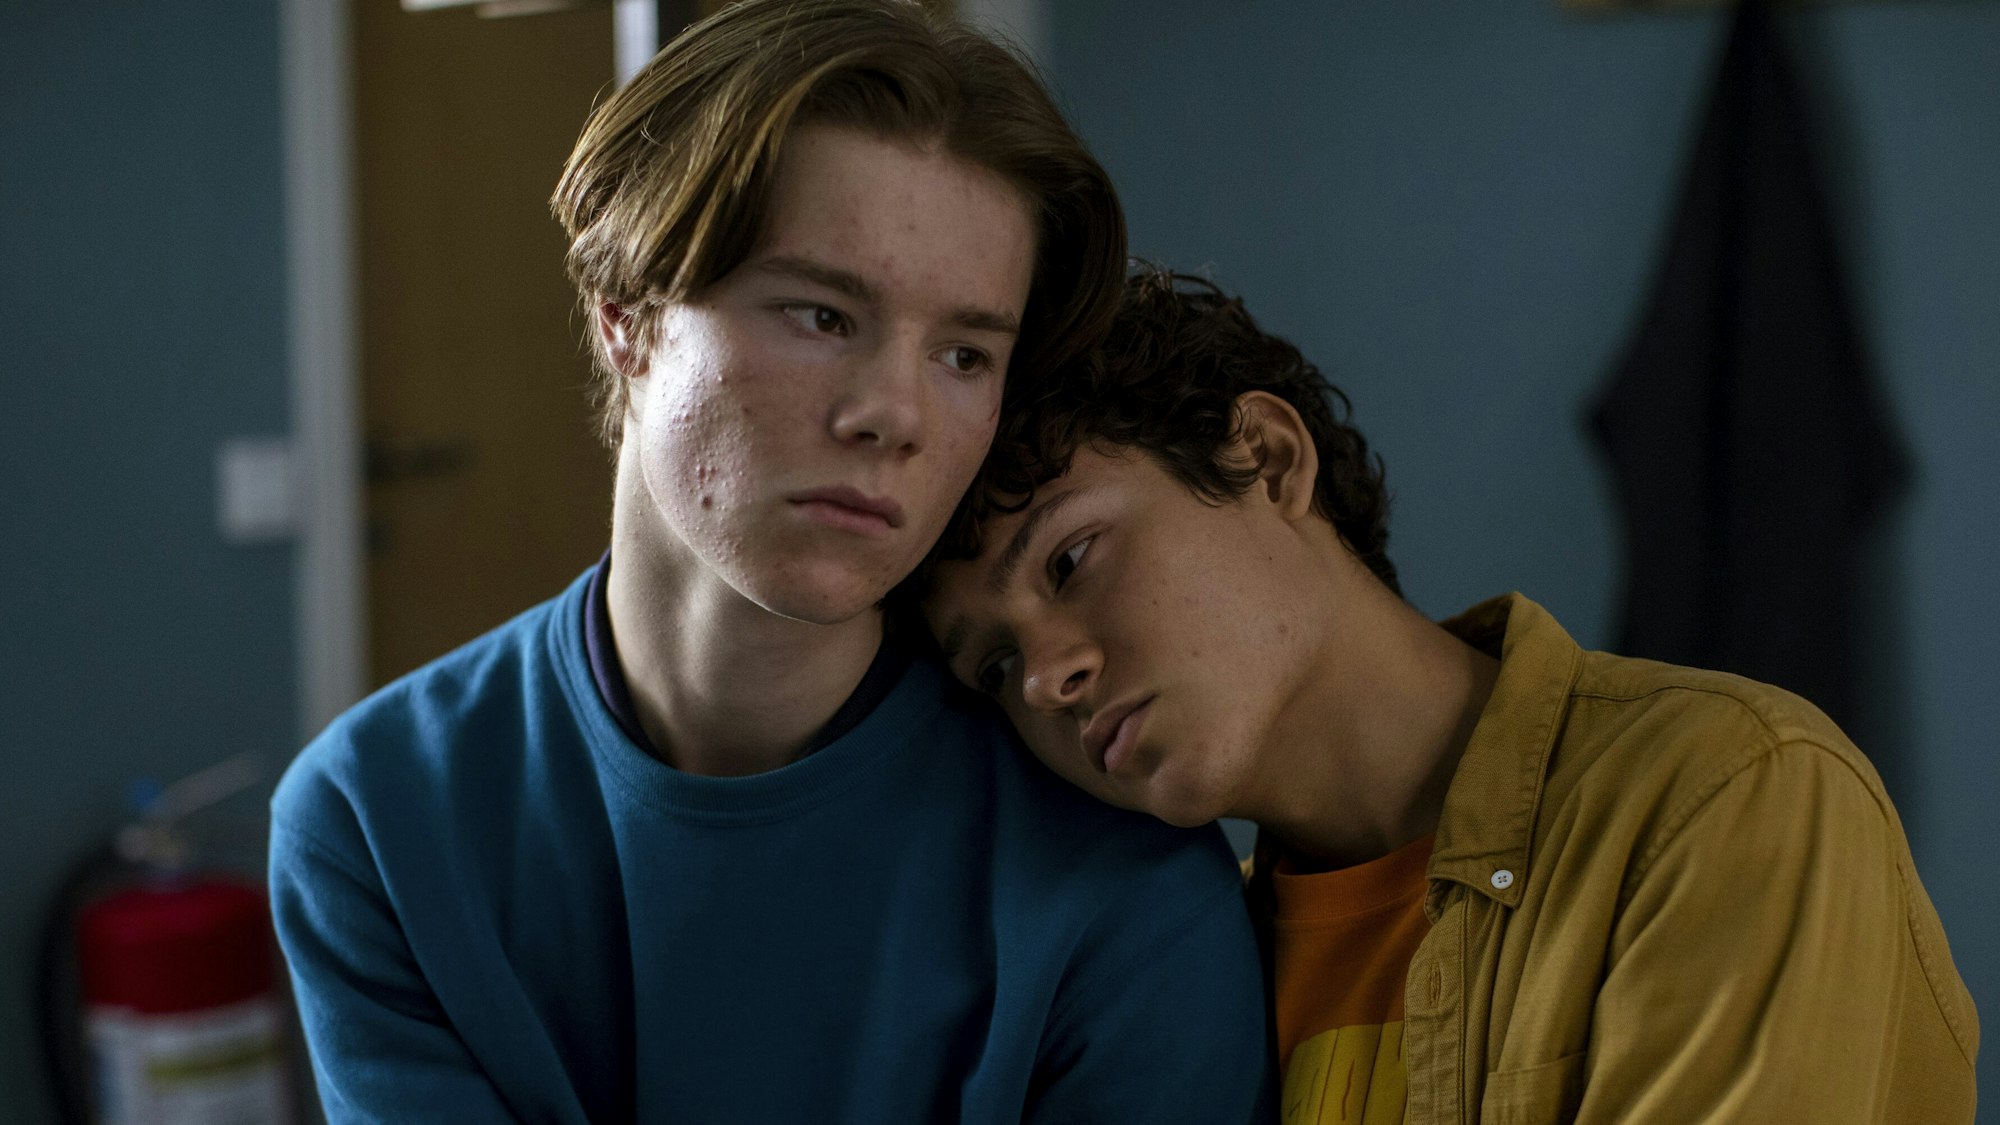 Edvin Ryding (l) als Wilhelm und Omar Rudberg als Simon in einer Szene aus „Young Royals“ (undatierte Filmszene). Die Serie ist auf dem Streamingdienst Netflix verfügbar.